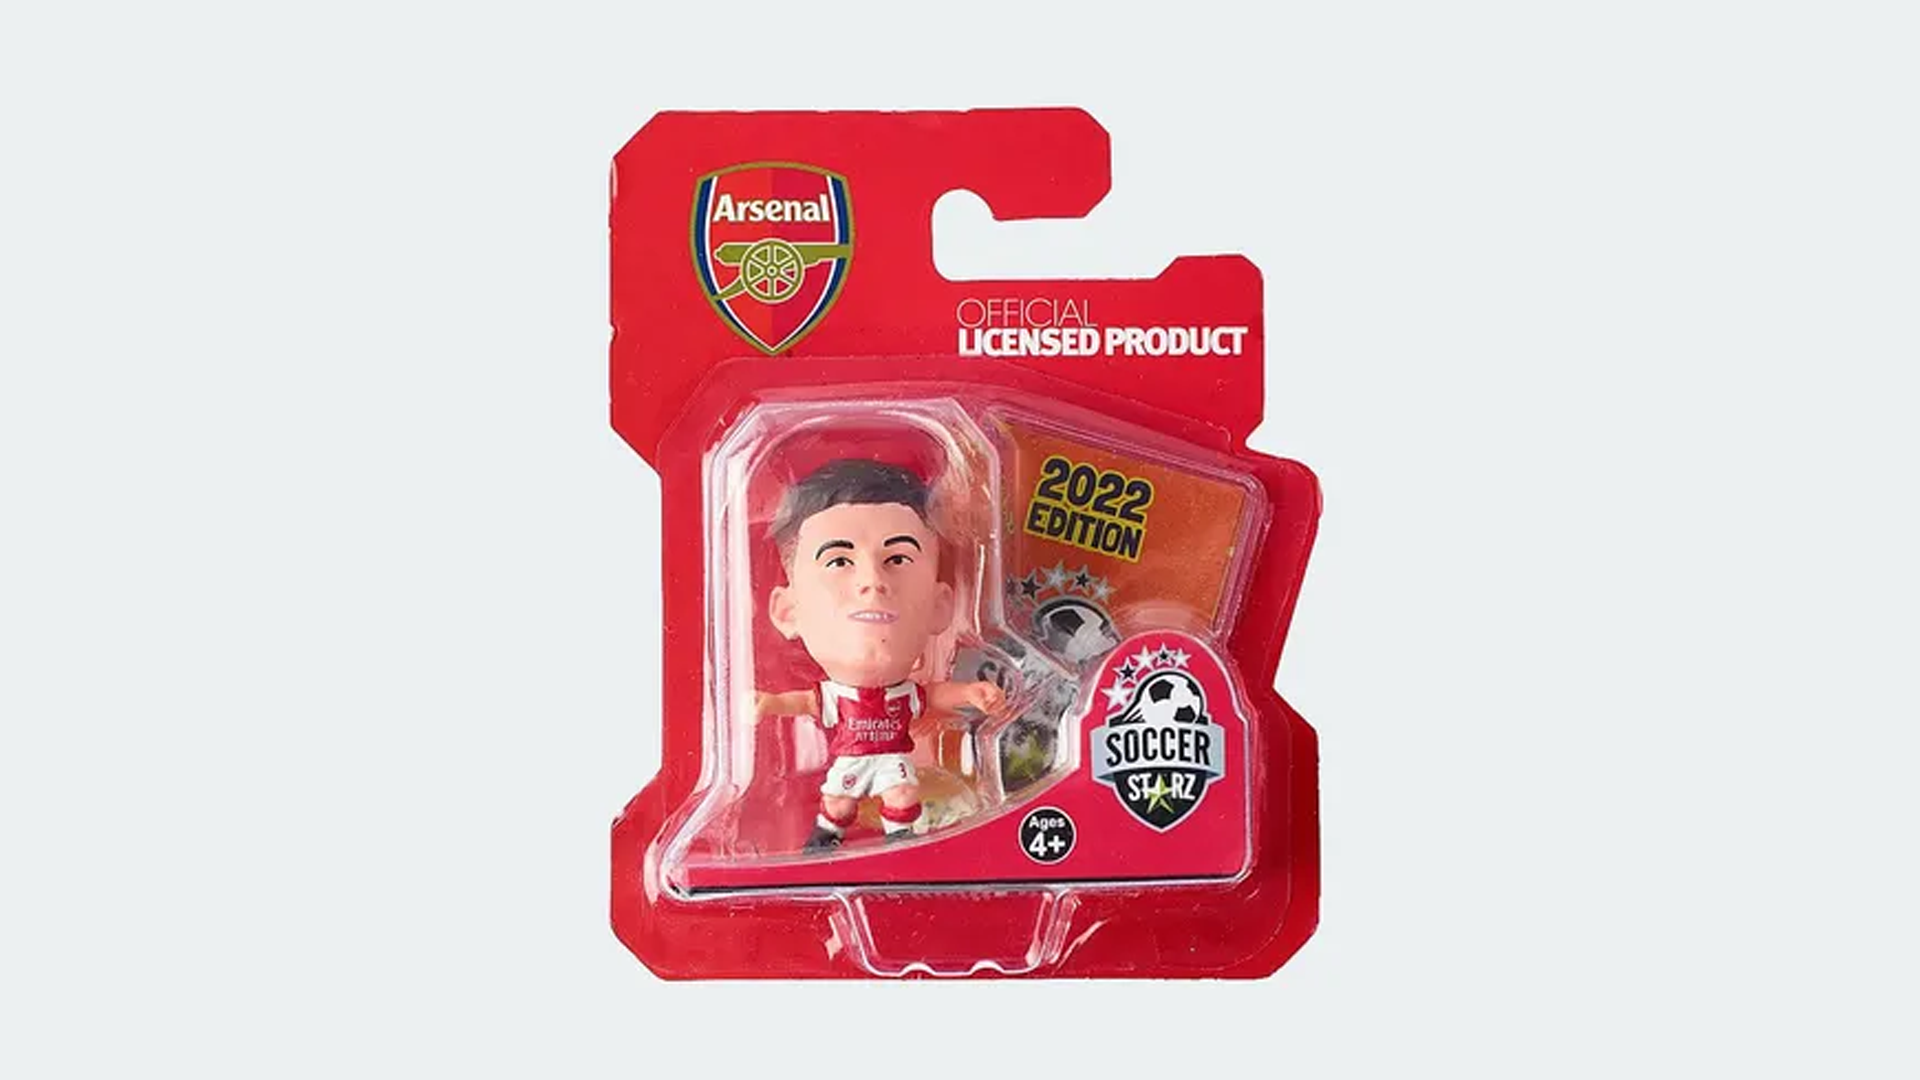 Arsenal FC Arsen Wenger SoccerStarz Mini 2 Inch Figure Officially Licensed